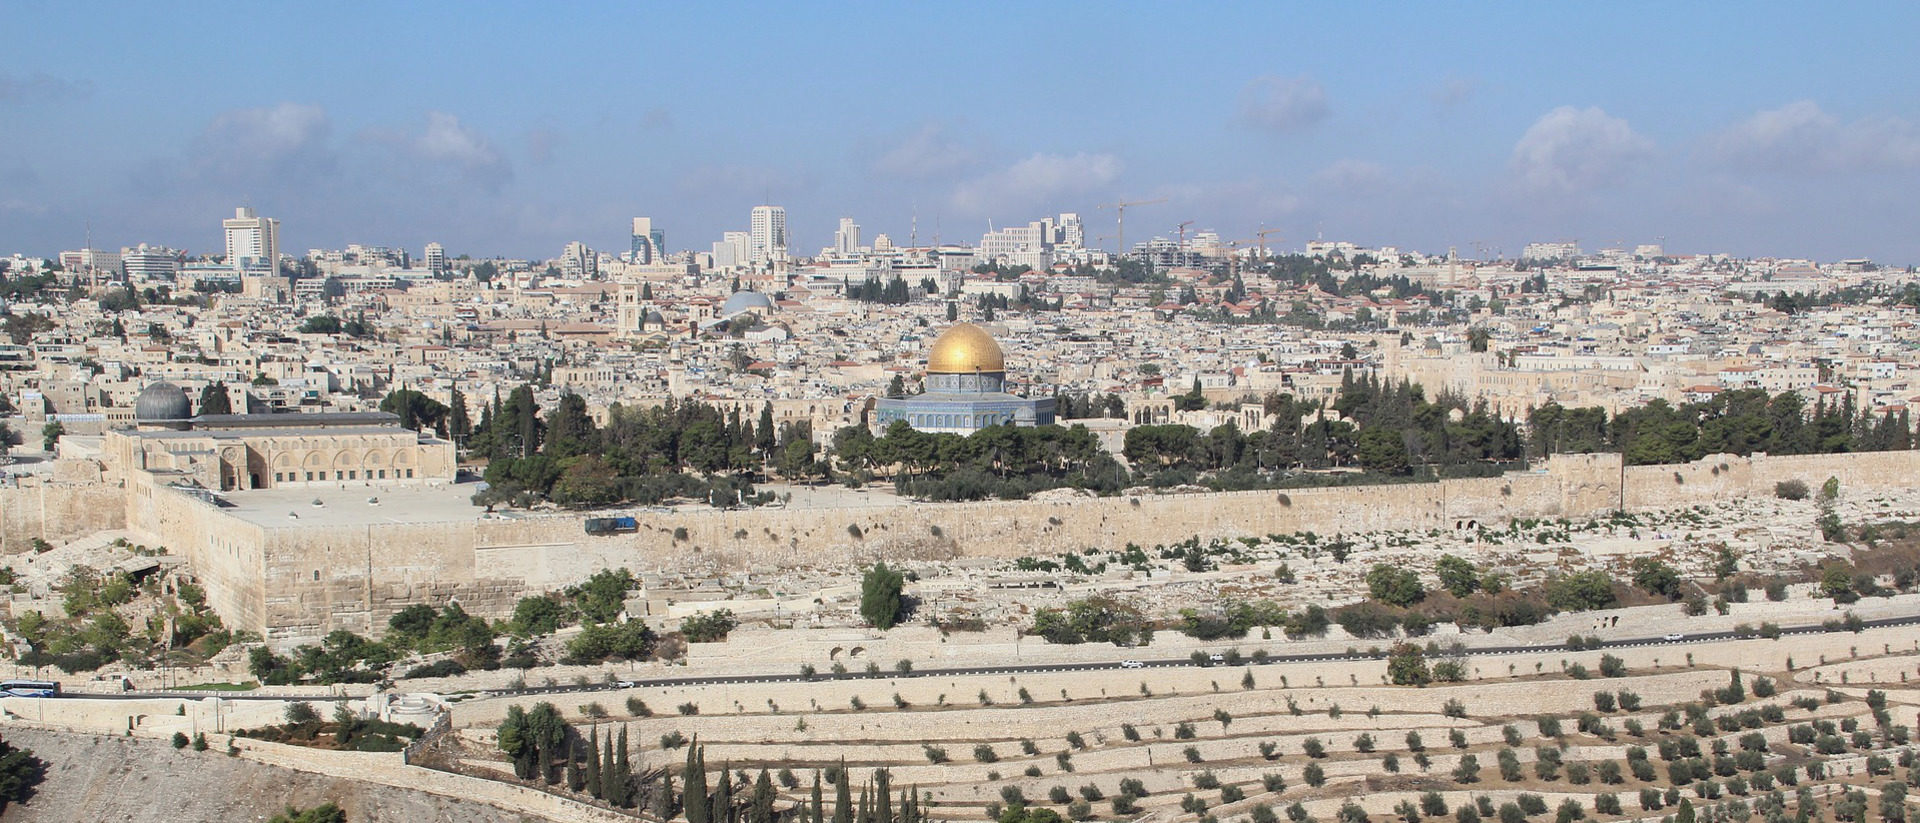 Blick auf die Altstadt von Jerusalem mit Tempelberg und Felsendom.